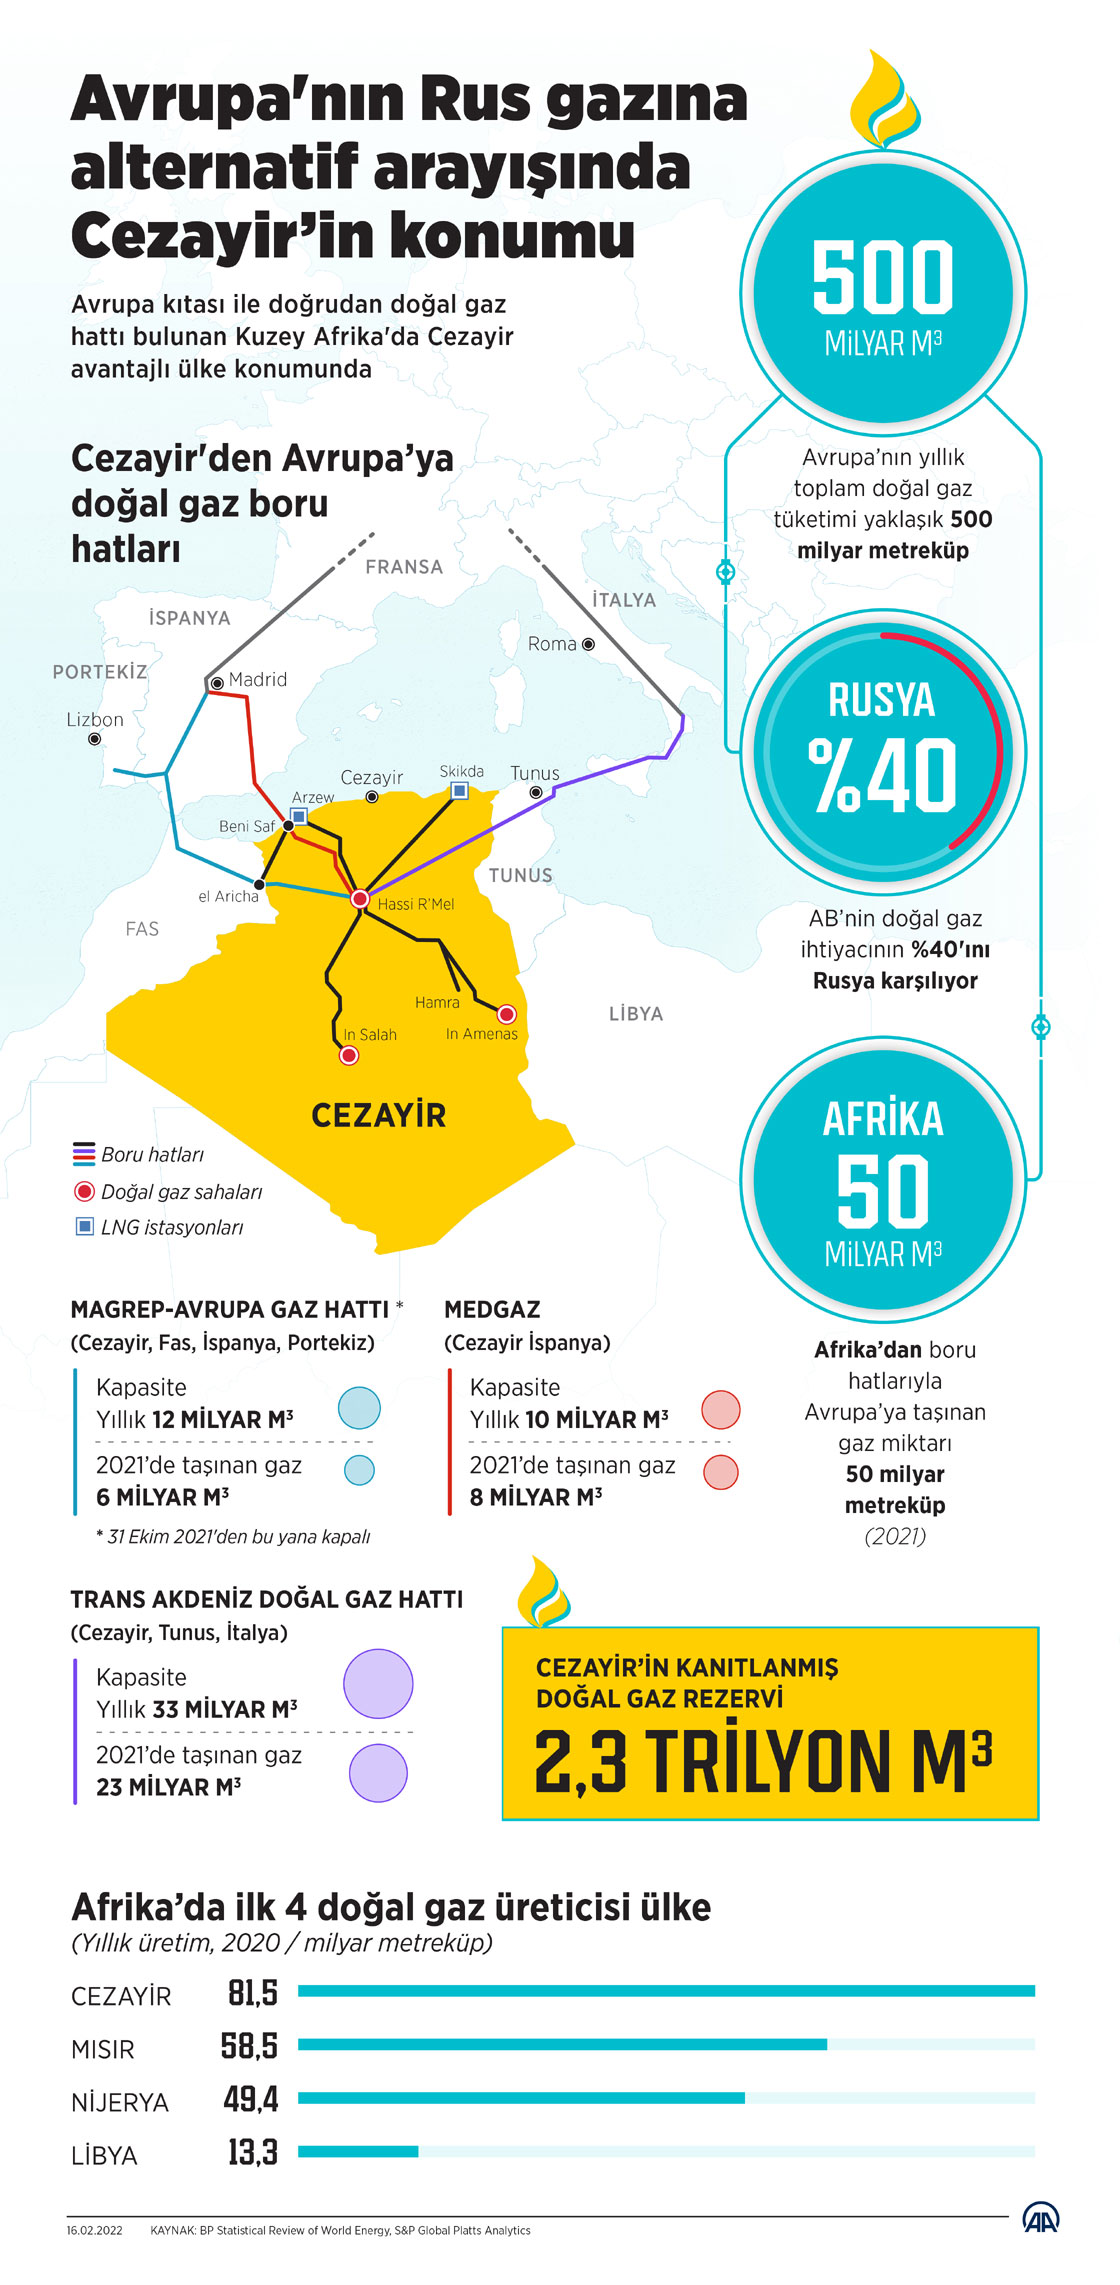 Avrupa'nın Rus gazına alternatif arayışında Cezayir’in konumu